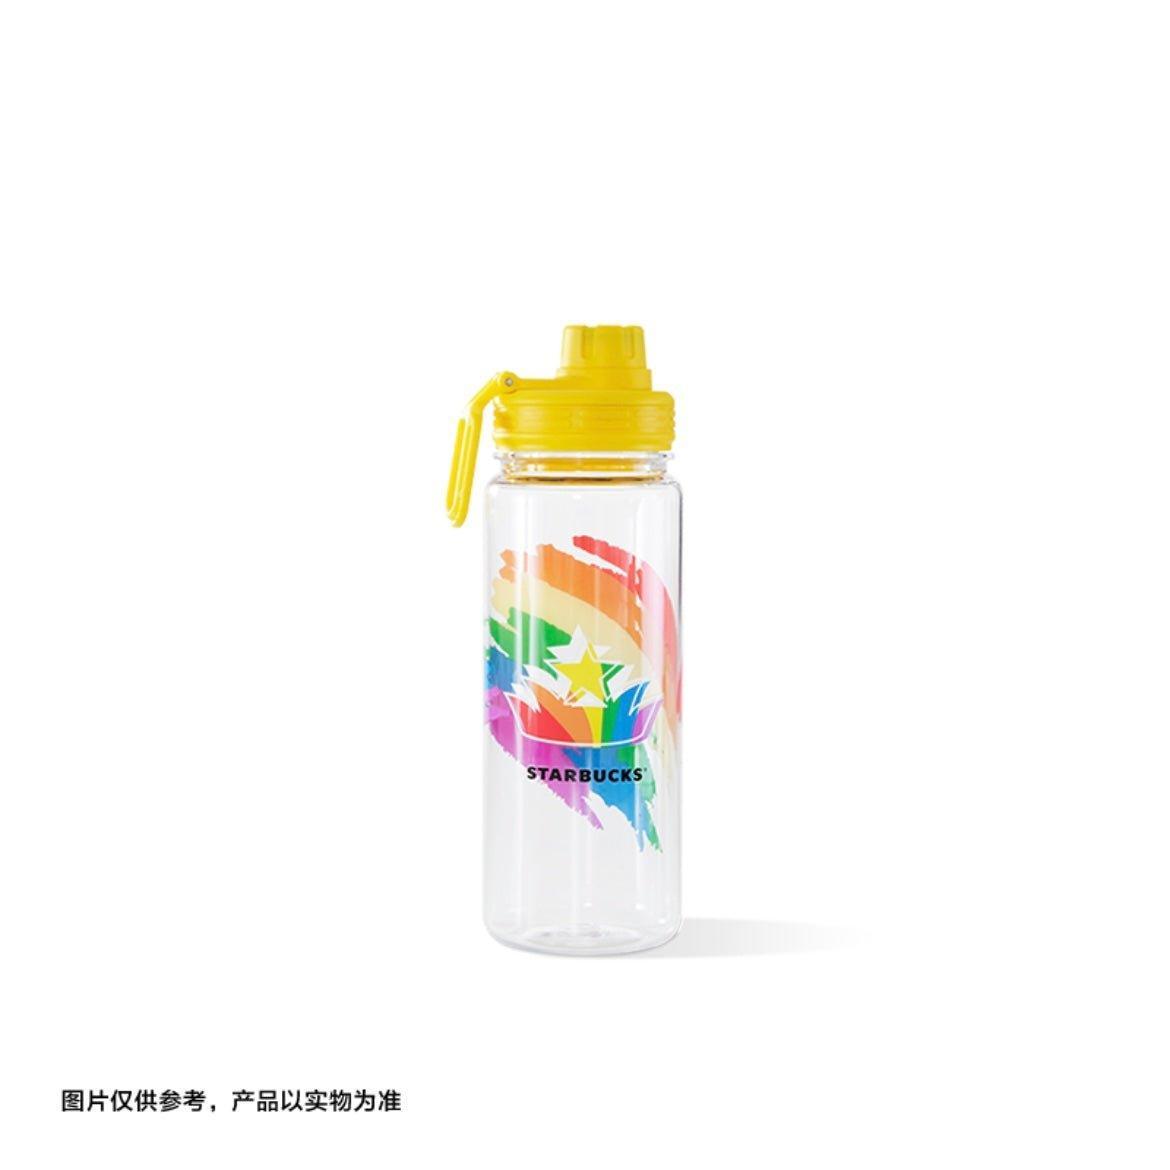 Starbucks 780ml/26oz Pride Love Plastic Bottle (multi-colour covers) - Ann Ann Starbucks